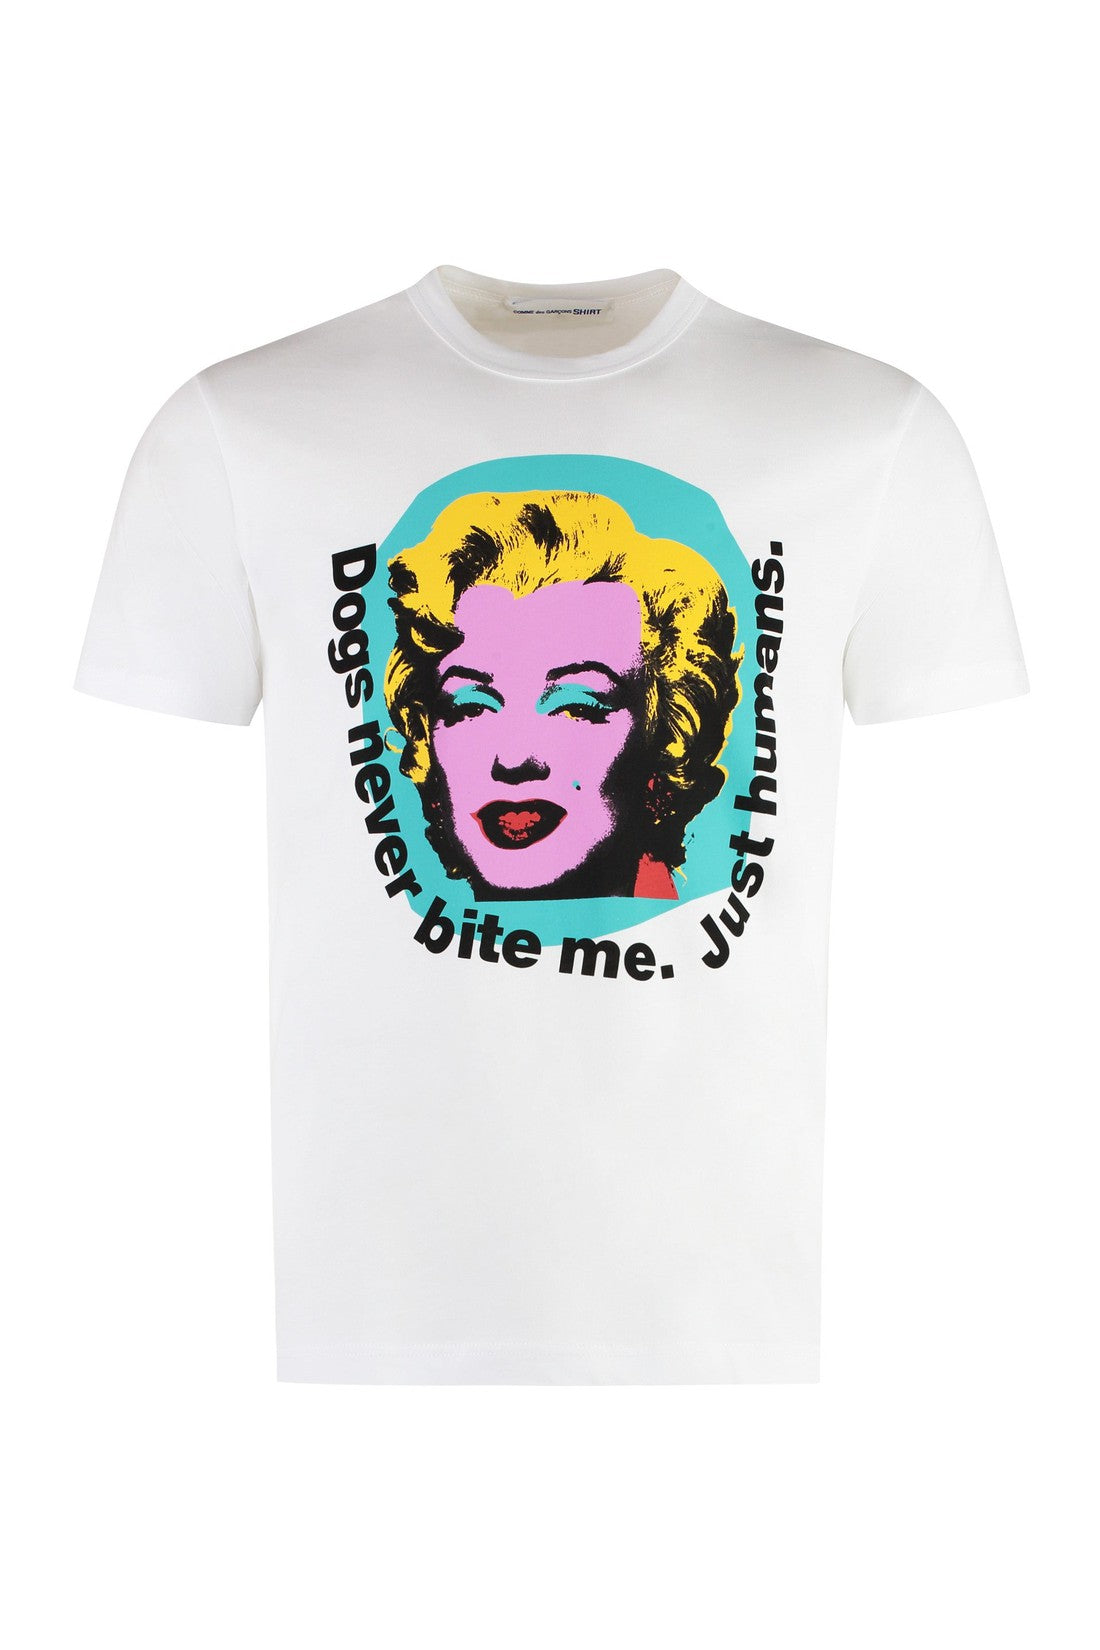 Comme des Garçons SHIRT-OUTLET-SALE-Andy Warhol print cotton t-shirt-ARCHIVIST